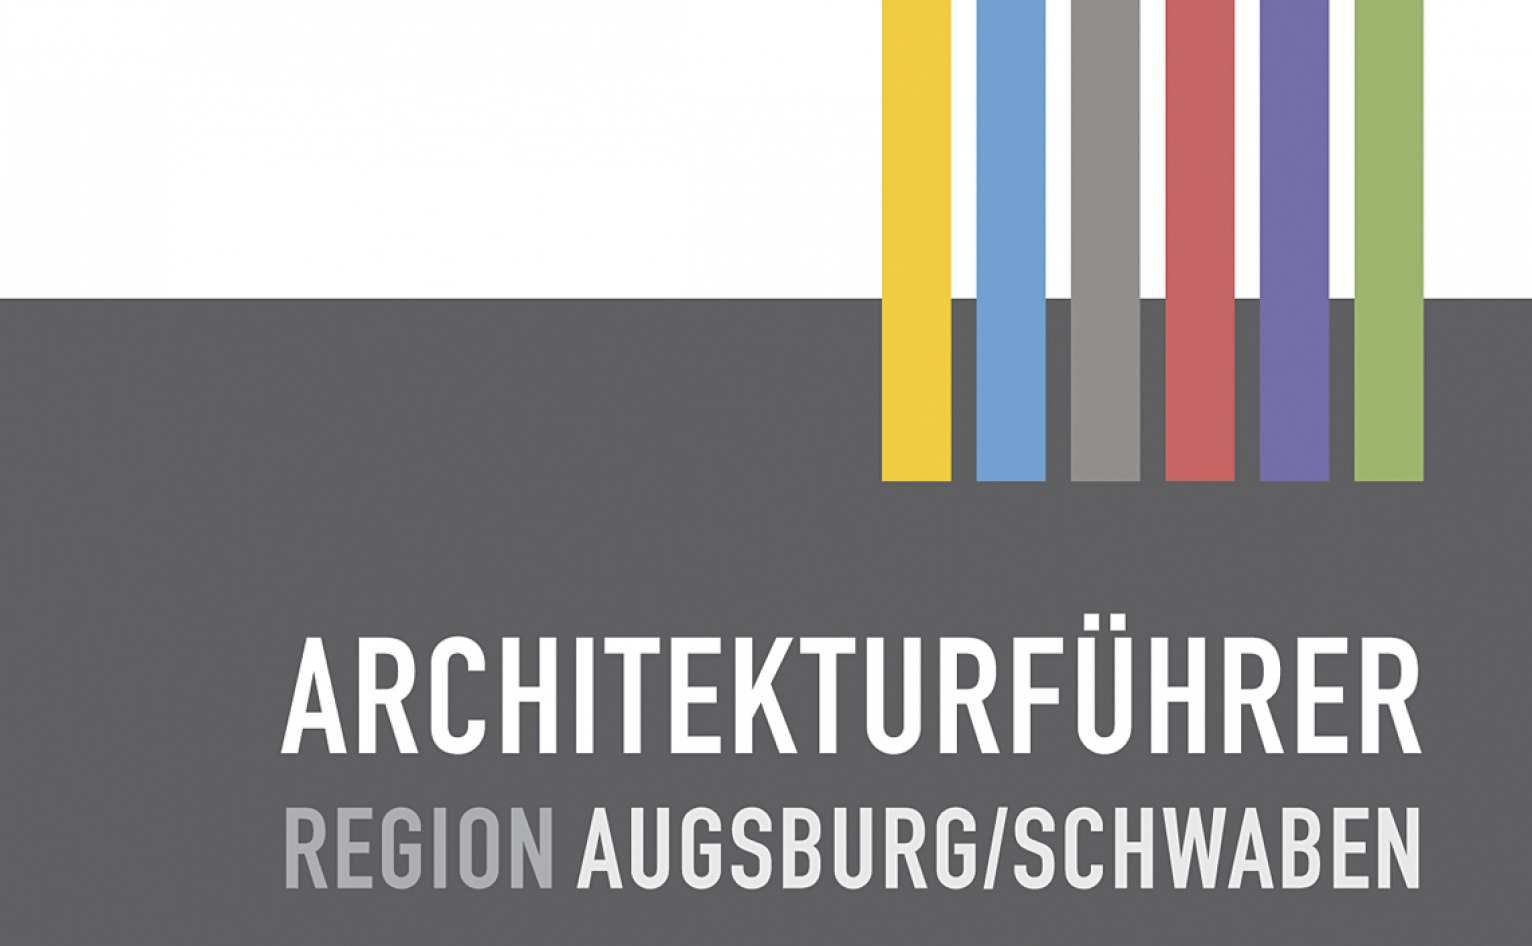 fritsch-tschaidse_architekten_architekturfuehrer-region-augsburgschwaben